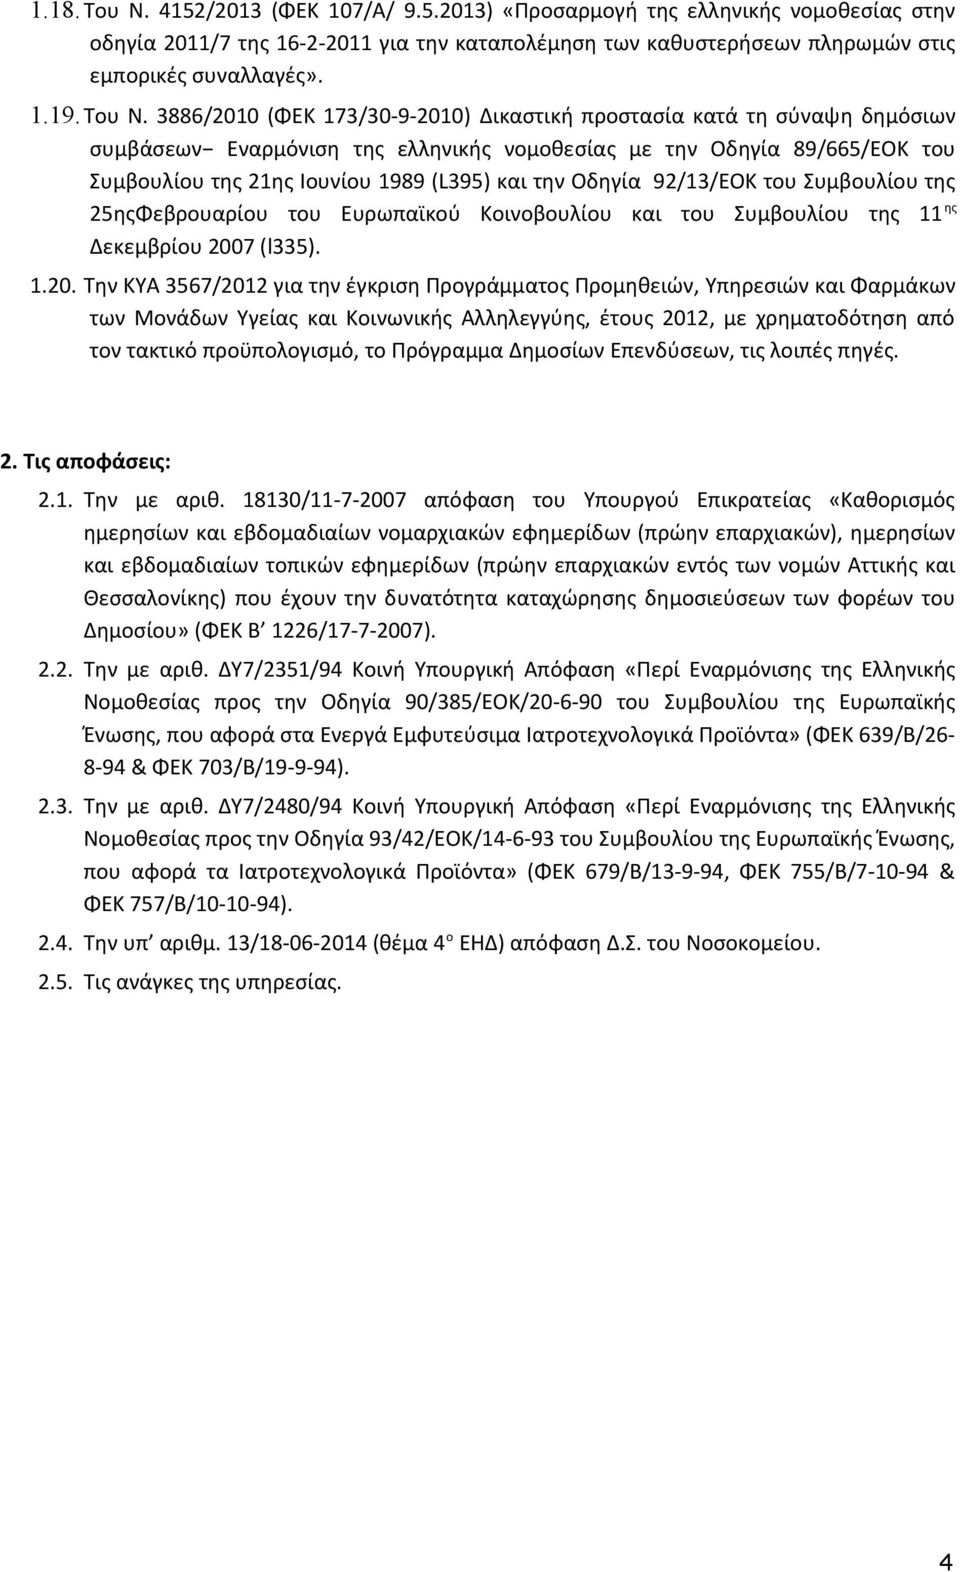 3886/2010 (ΦΕΚ 173/30-9-2010) Δικαστική προστασία κατά τη σύναψη δημόσιων συμβάσεων Εναρμόνιση της ελληνικής νομοθεσίας με την Οδηγία 89/665/ΕΟΚ του Συμβουλίου της 21ης Ιουνίου 1989 (L395) και την